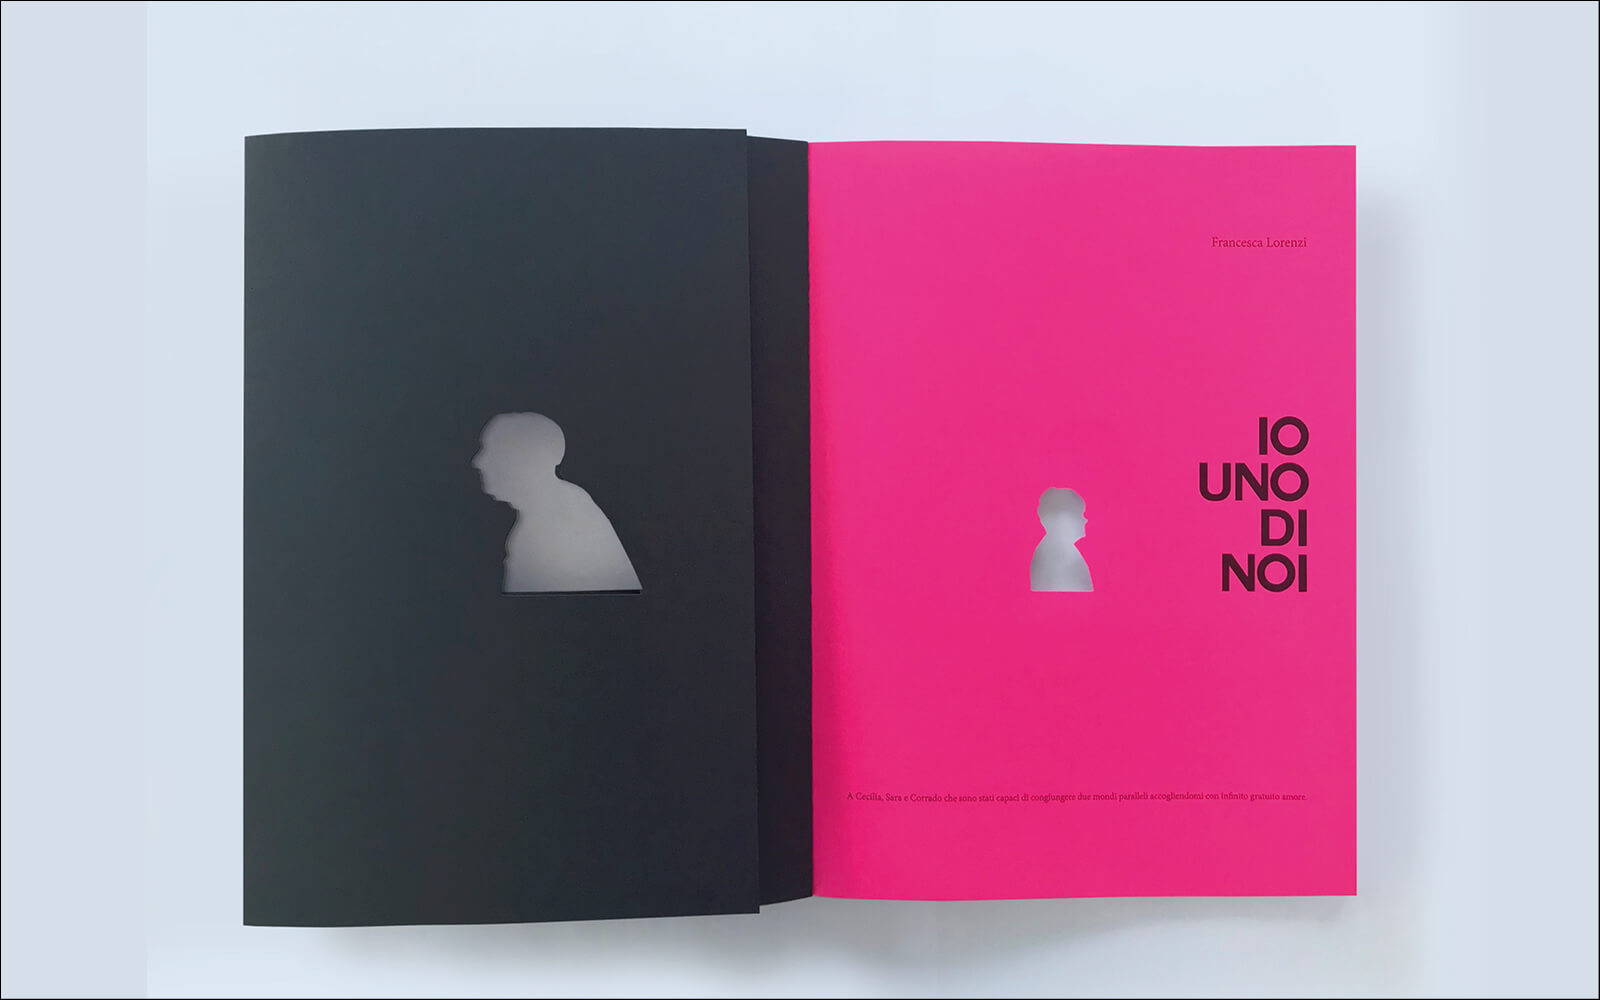 dettaglio copertina del catalogo di arte -Io uno di noi- stampa fluorescente rosa e immagine ad intaglio su livelli, design Diadestudio agenzia di pubblicità Trento